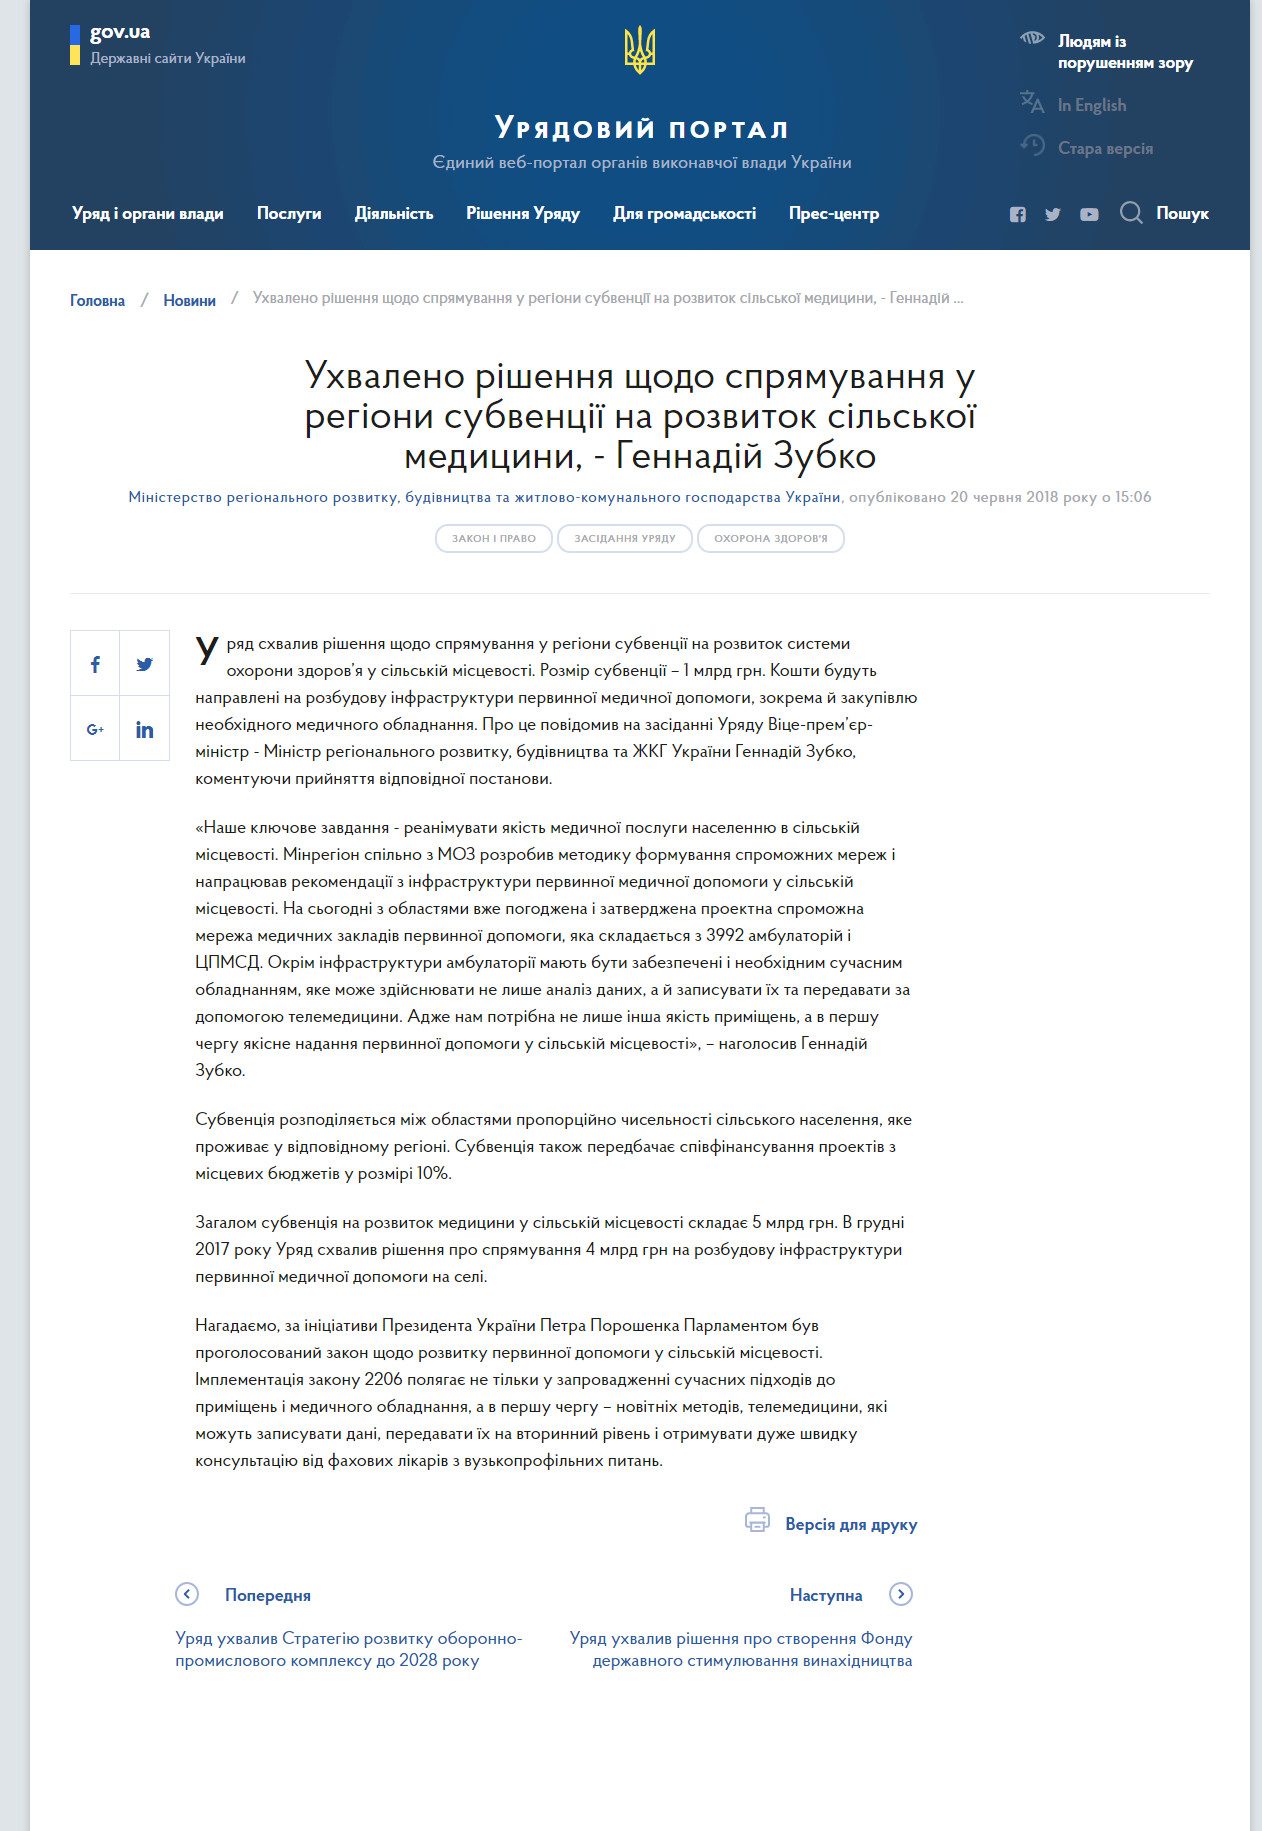 https://www.kmu.gov.ua/ua/news/uhvaleno-rishennya-shodo-spryamuvannya-u-regioni-subvenciyi-na-rozvitok-silskoyi-medicini-gennadij-zubko